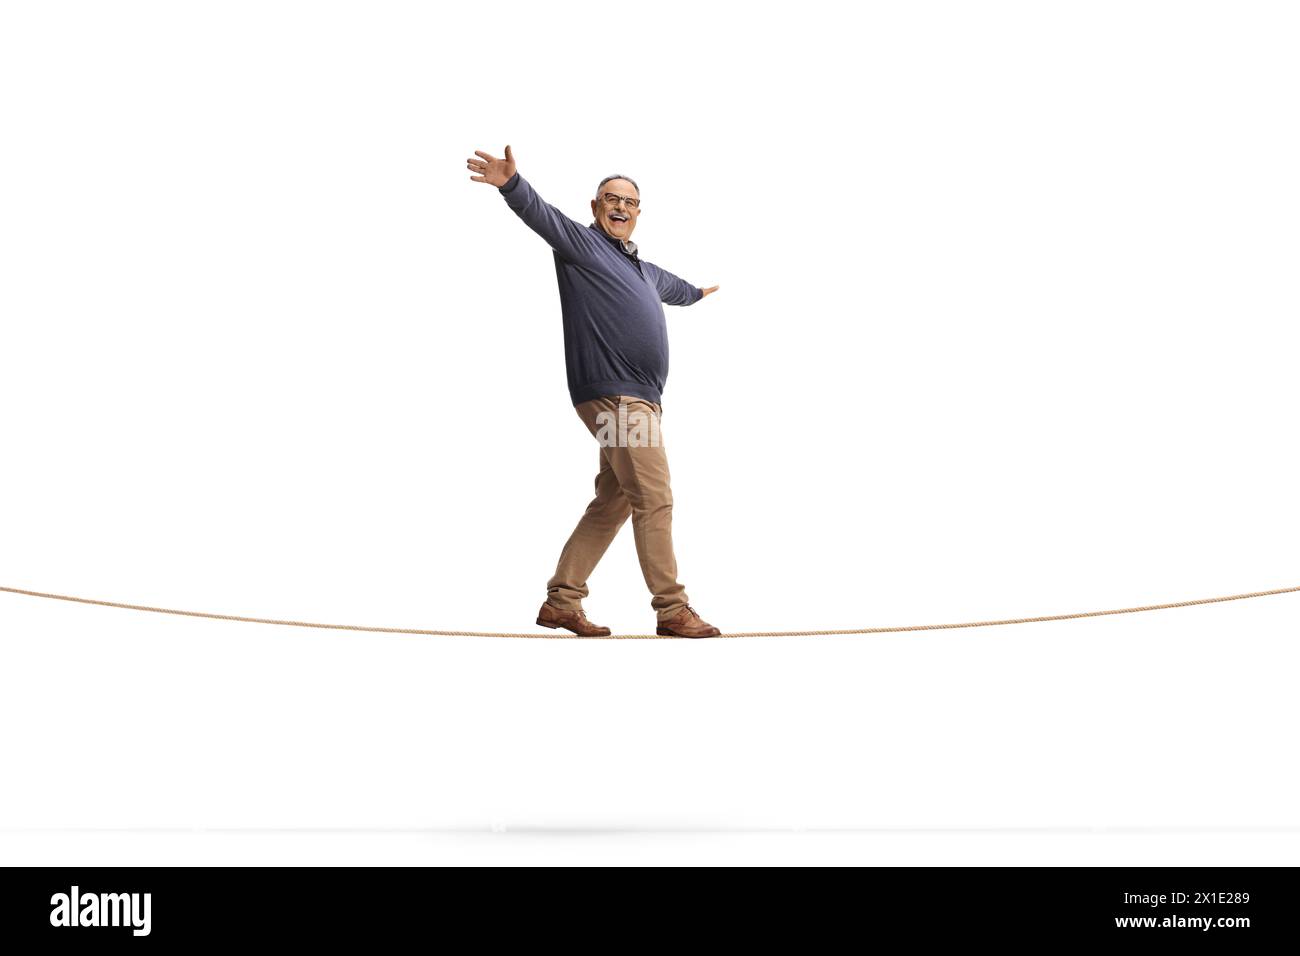 Plan pleine longueur d'un homme mature marchant sur une corde isolé sur fond blanc, garder le concept d'équilibre Banque D'Images